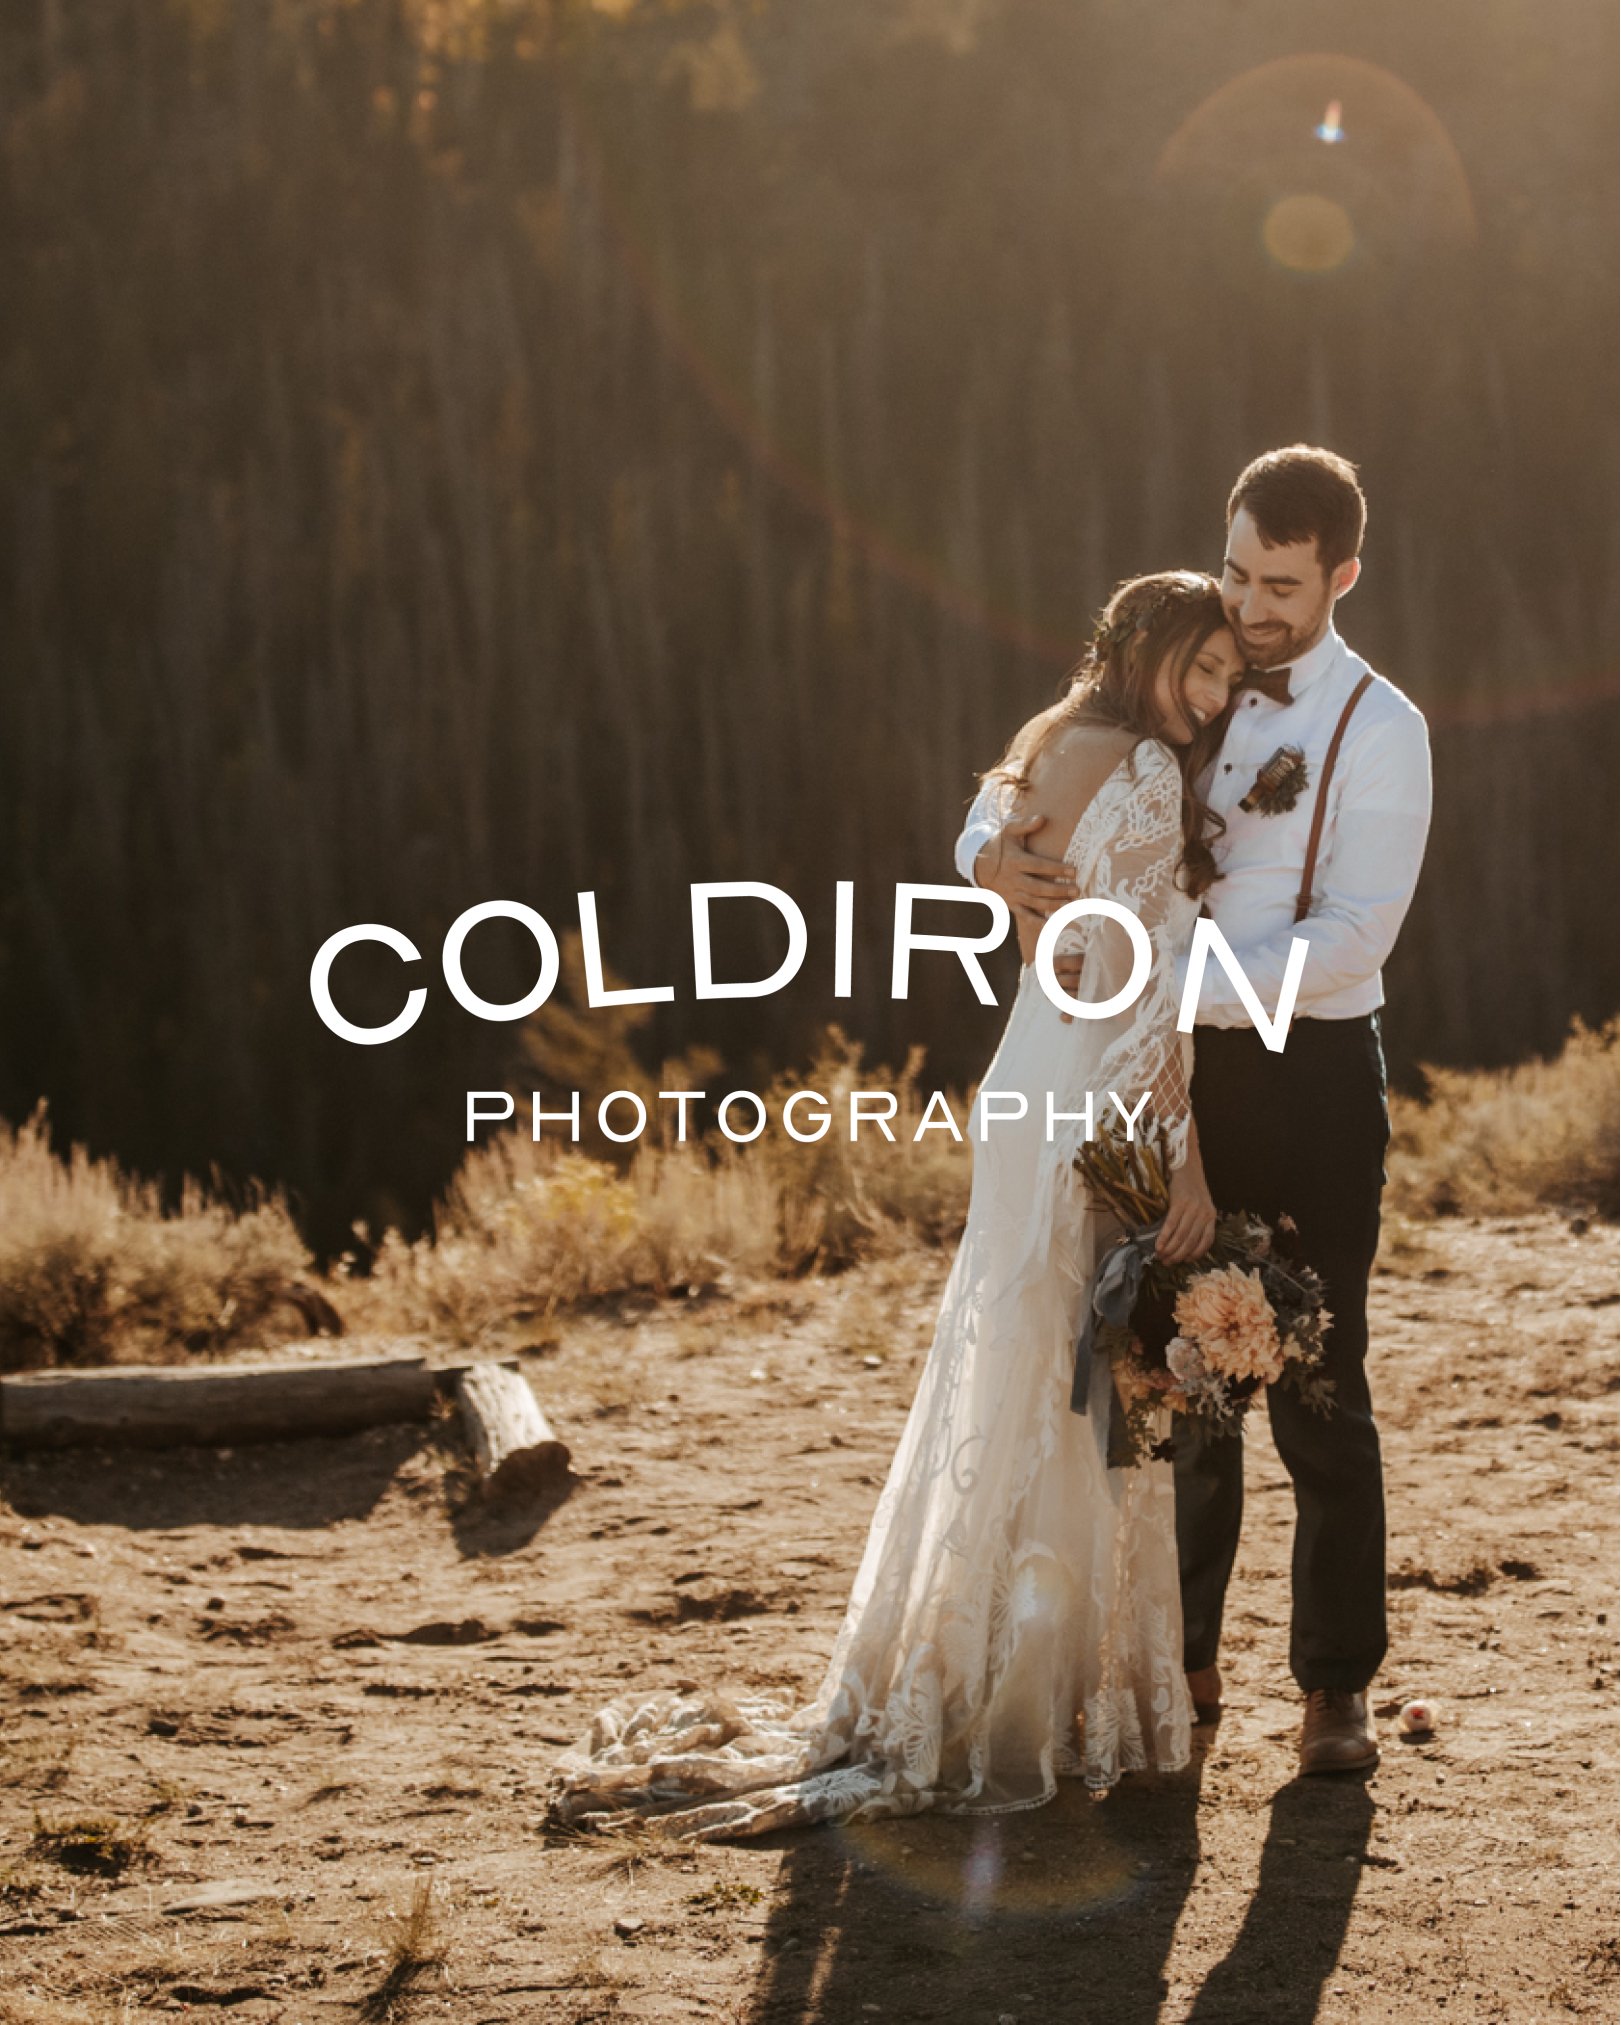 Coldiron Photography Logo.jpg